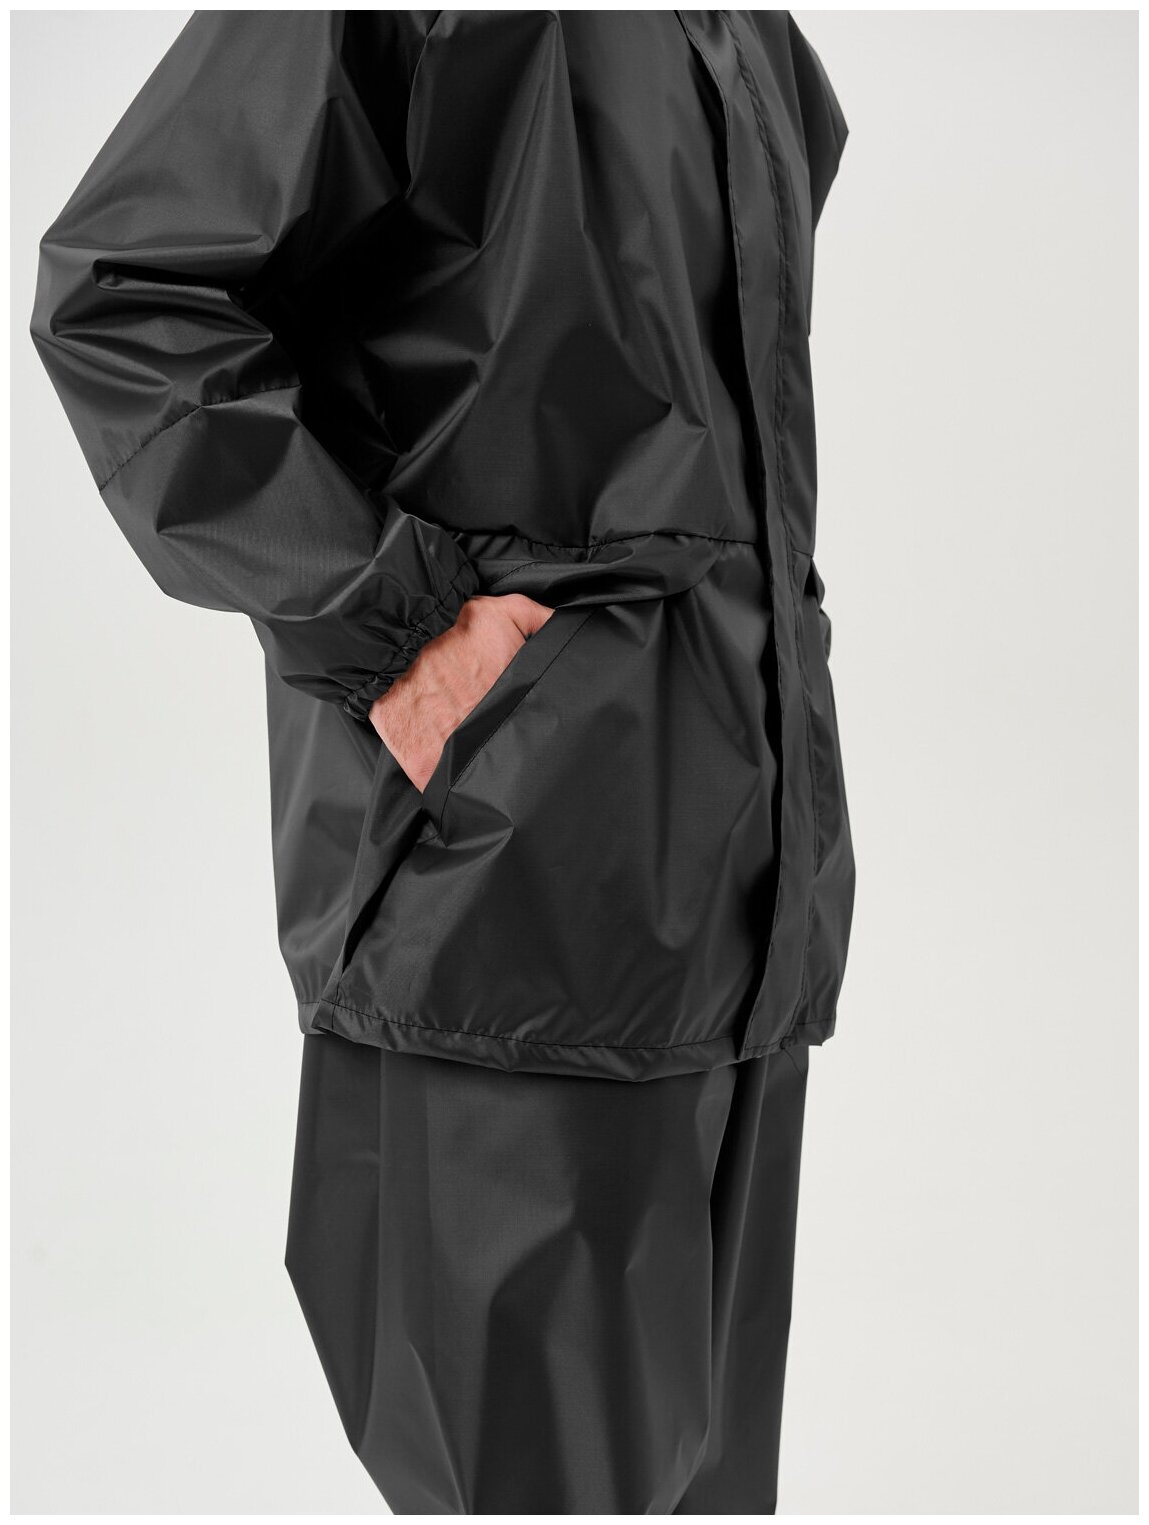 Дождевик мужской пончо накидка непромокаемый костюм KATRAN циклон (Оксфорд, темно-серый), Размер: 60-62